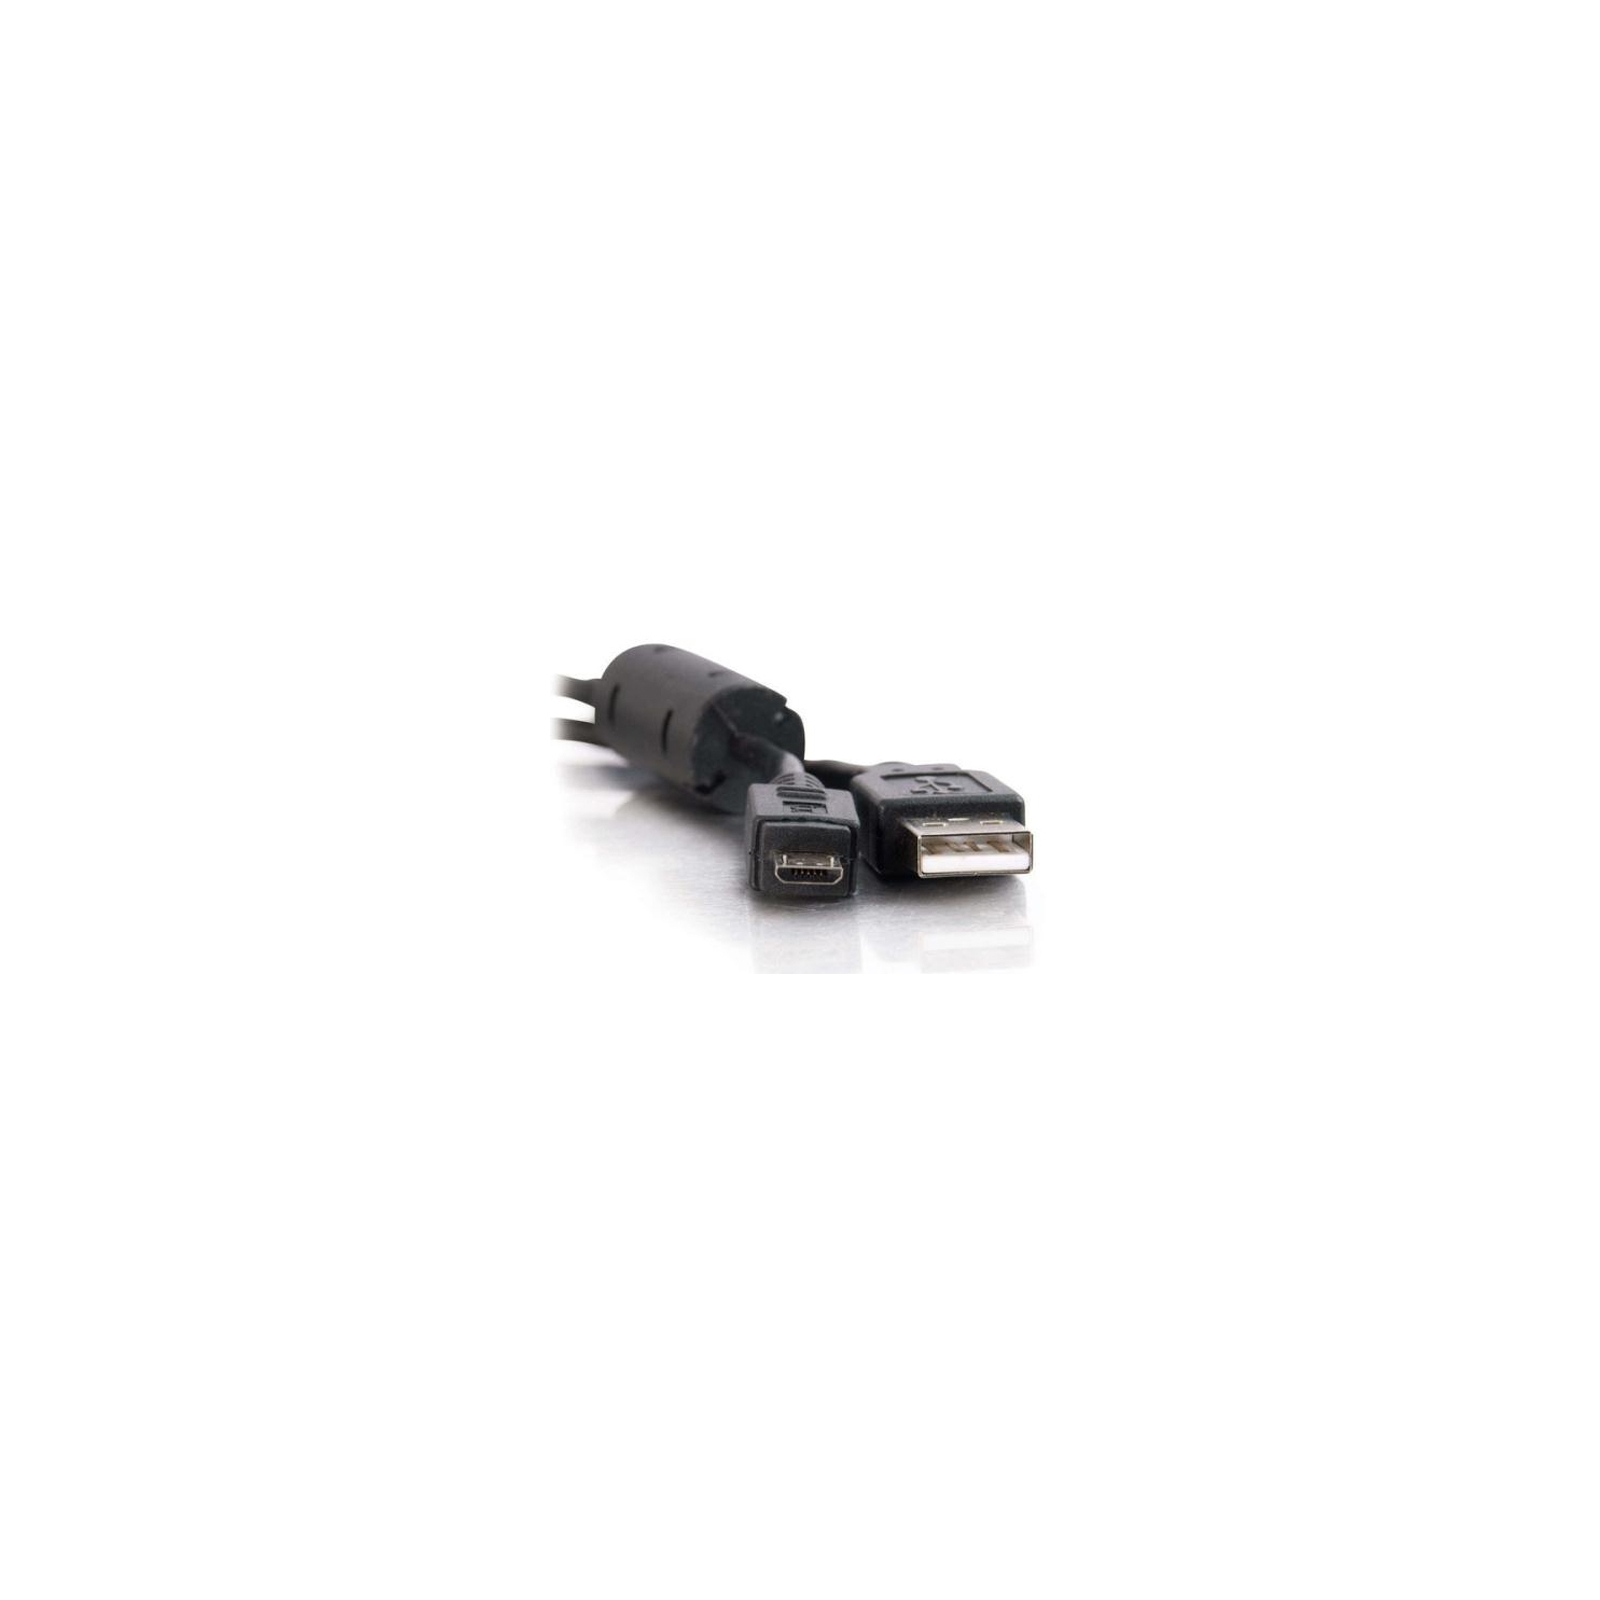 Дата кабель USB 2.0 AM to Micro 5P 0.8m Atcom (9174)